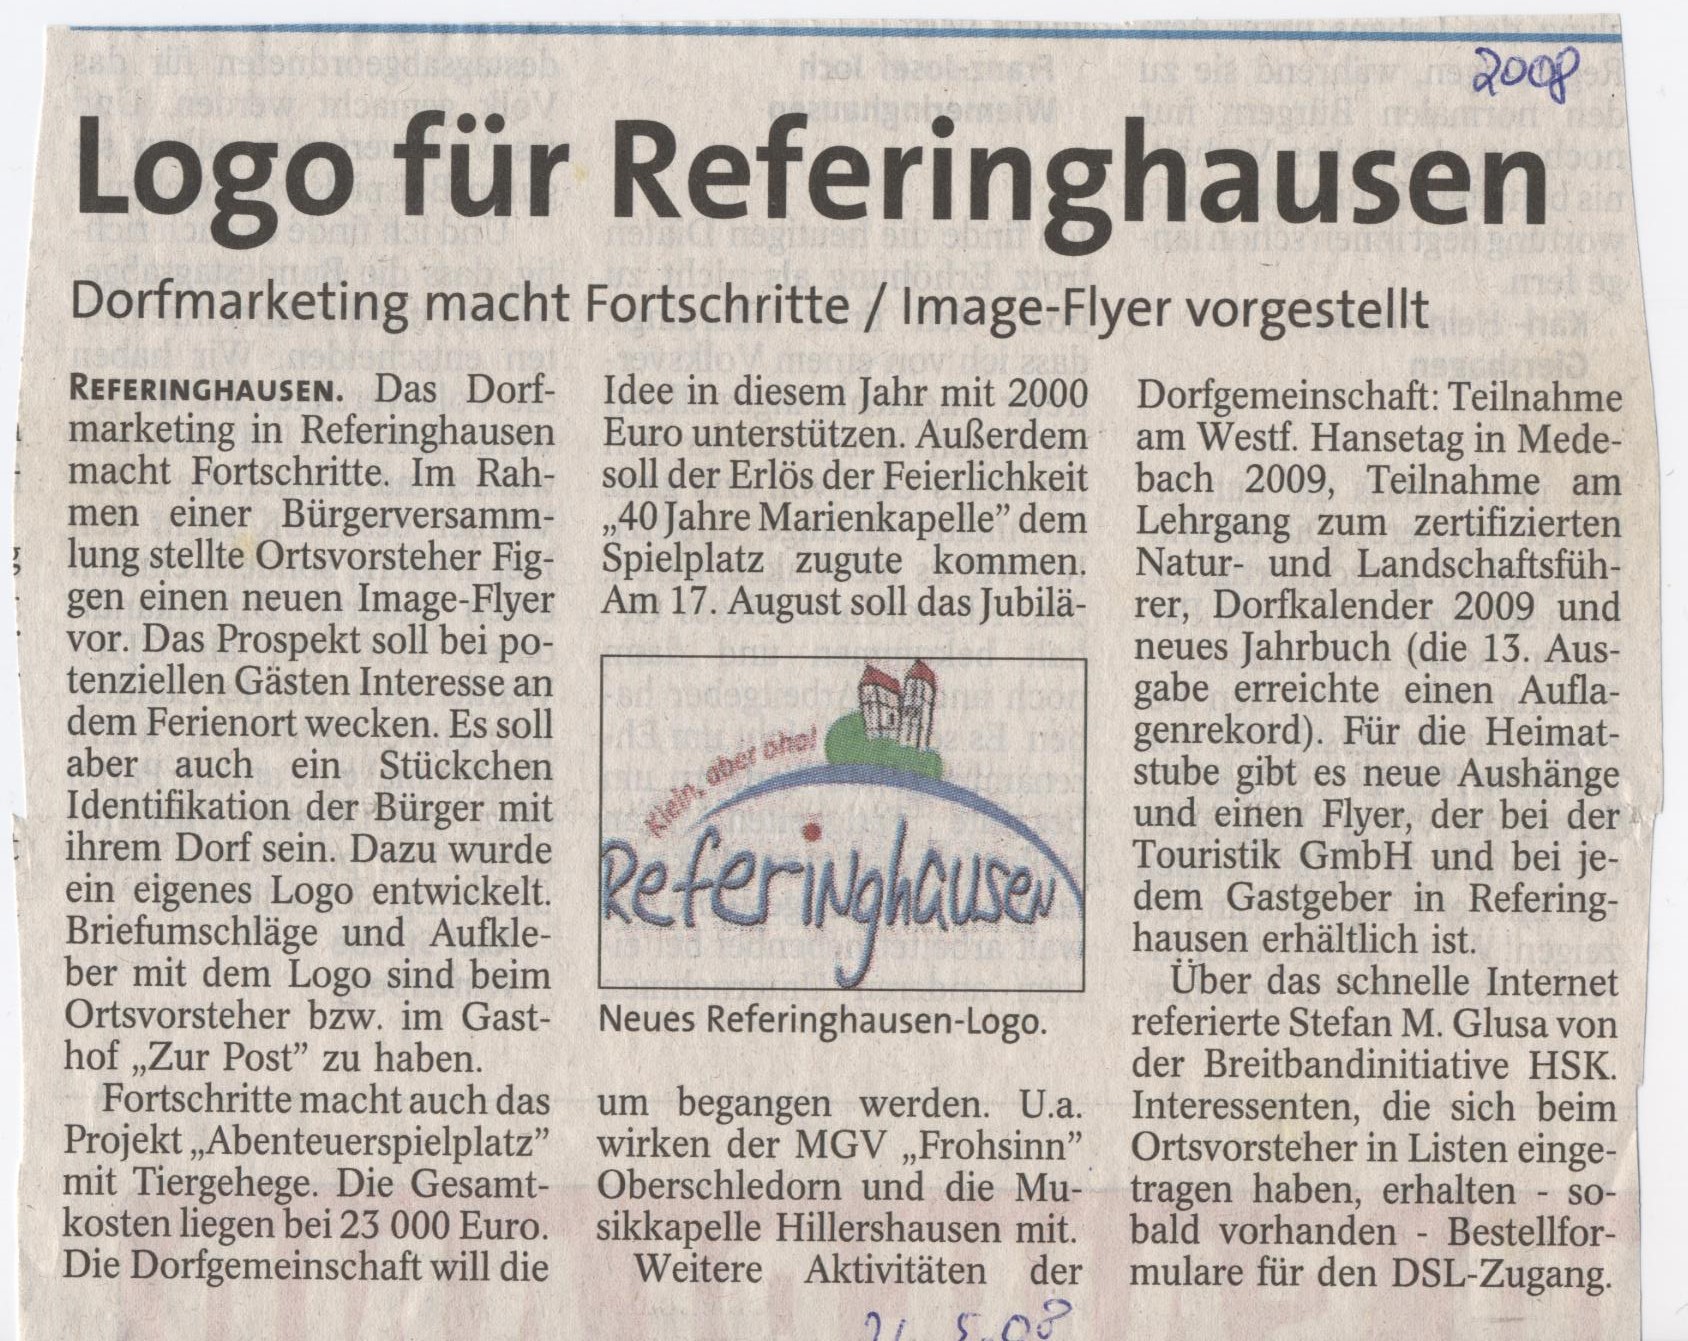 Logo für Referinghausen 